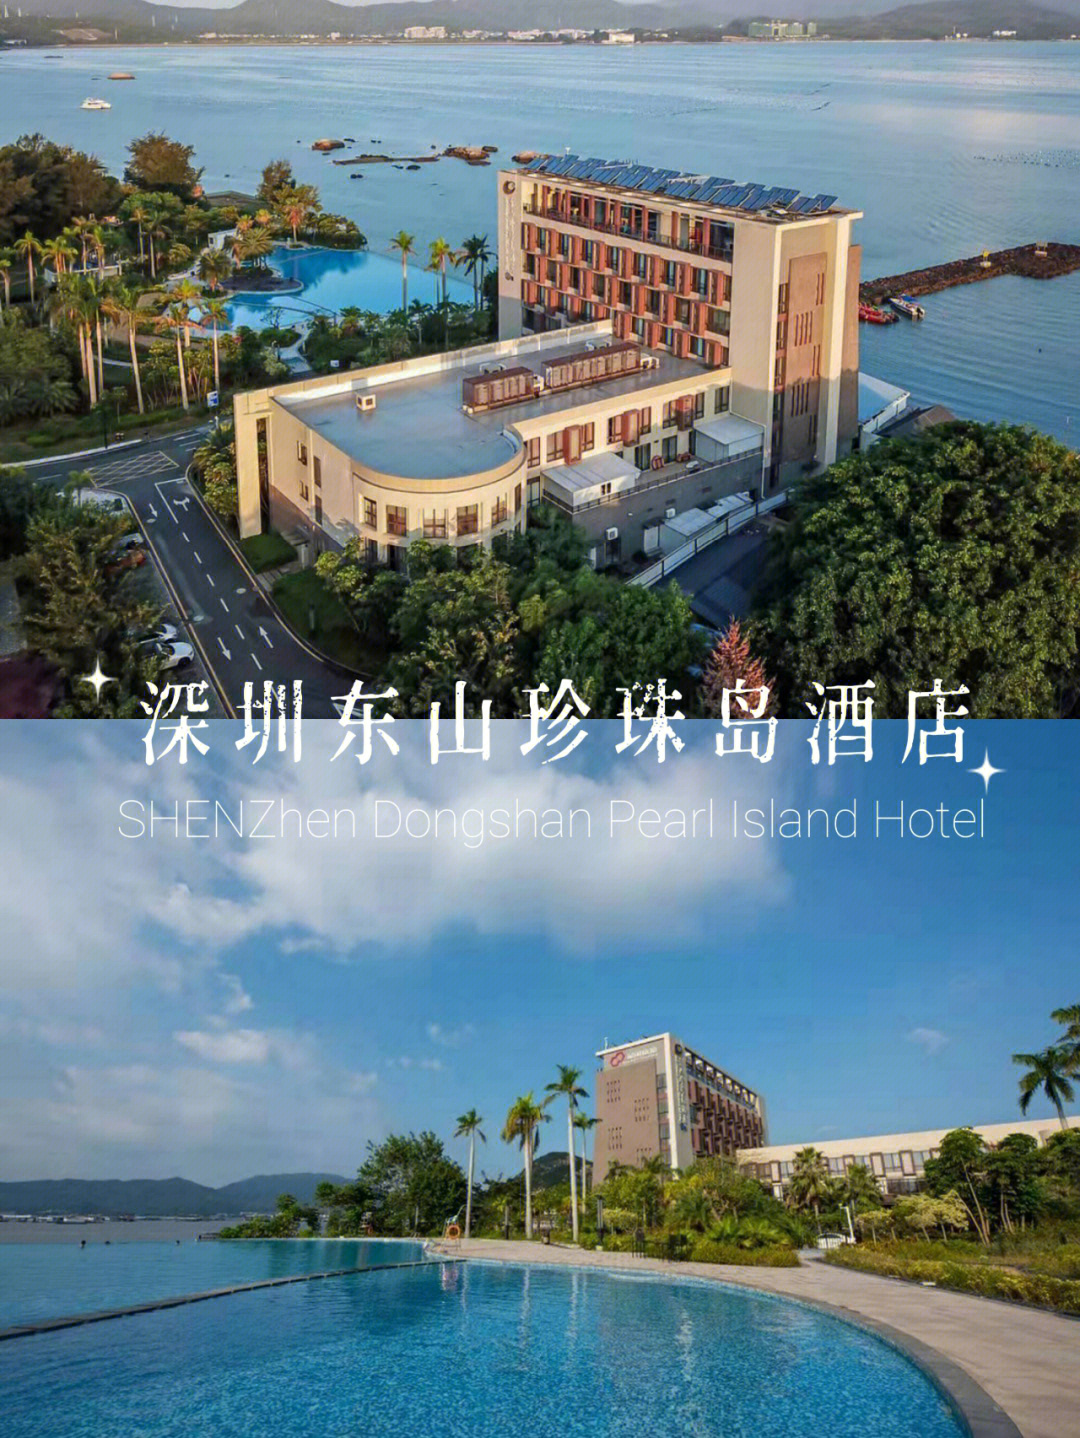 深圳海边度假丨深圳东山珍珠岛酒店